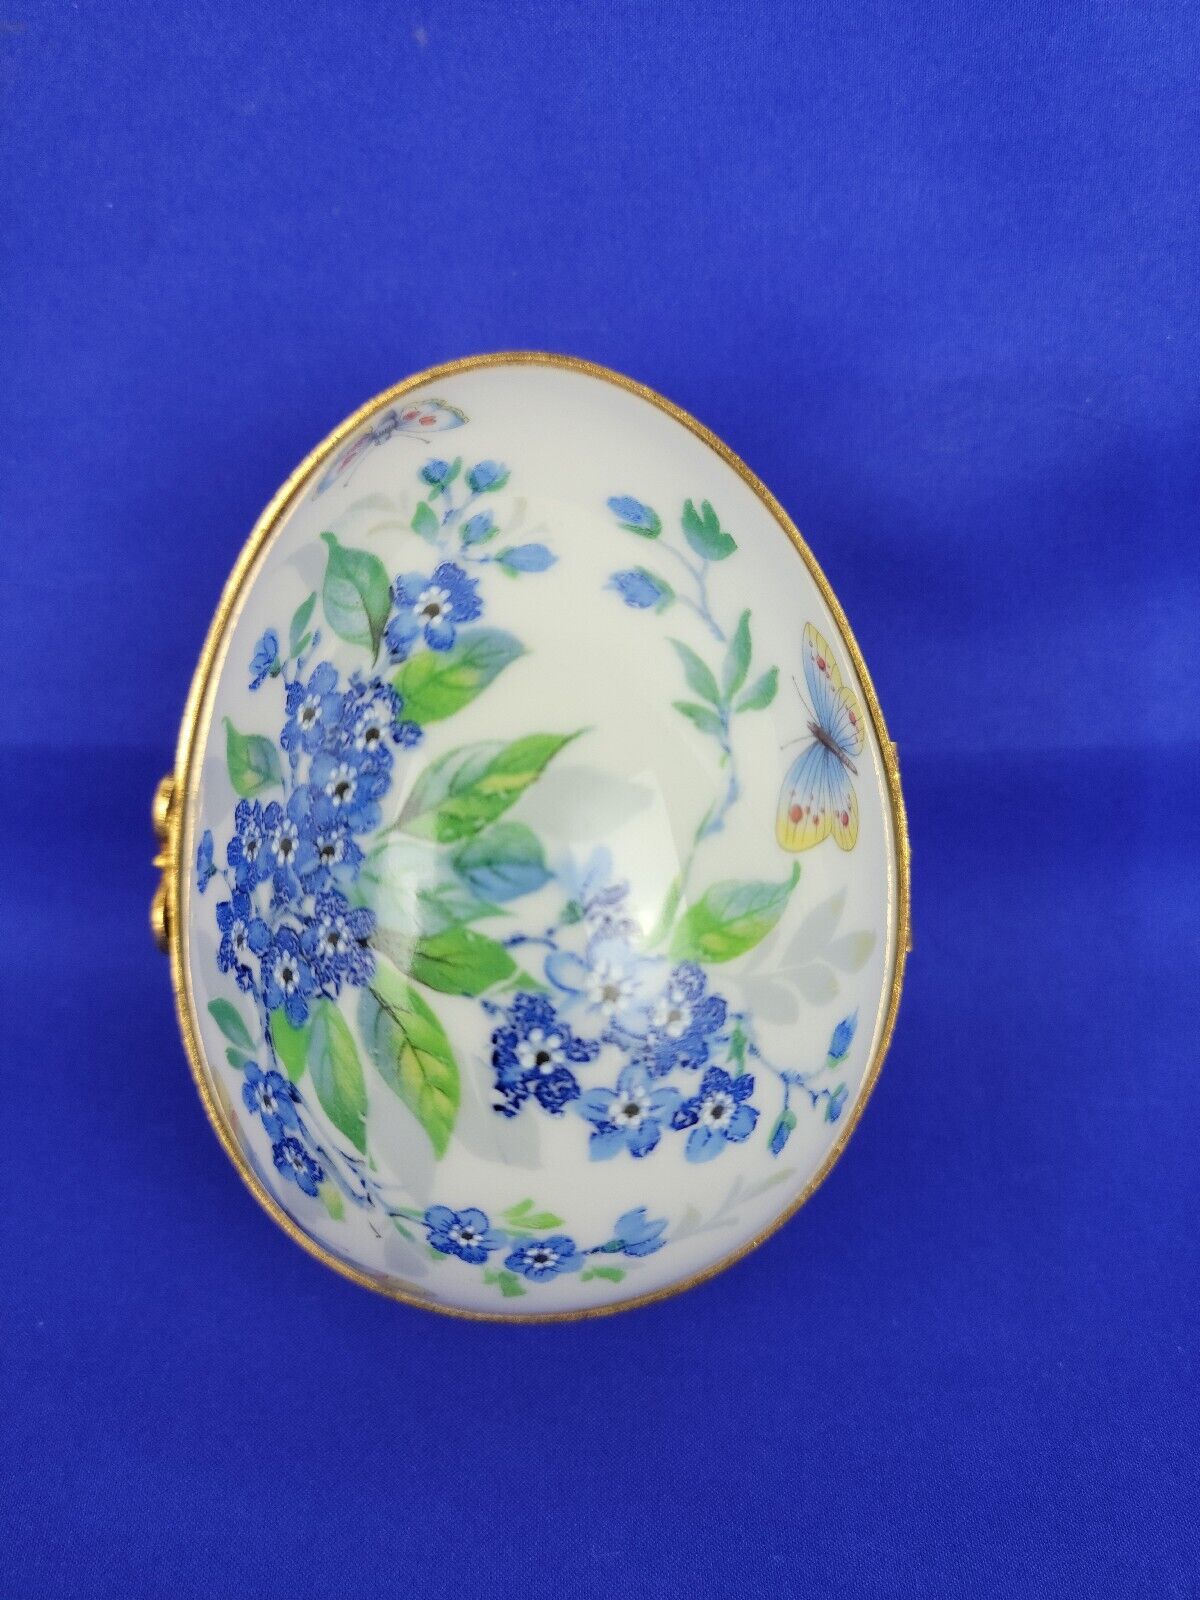 Vintage Limoges France Egg Trinket Box Butterflies & Blue Flowers Porcelain